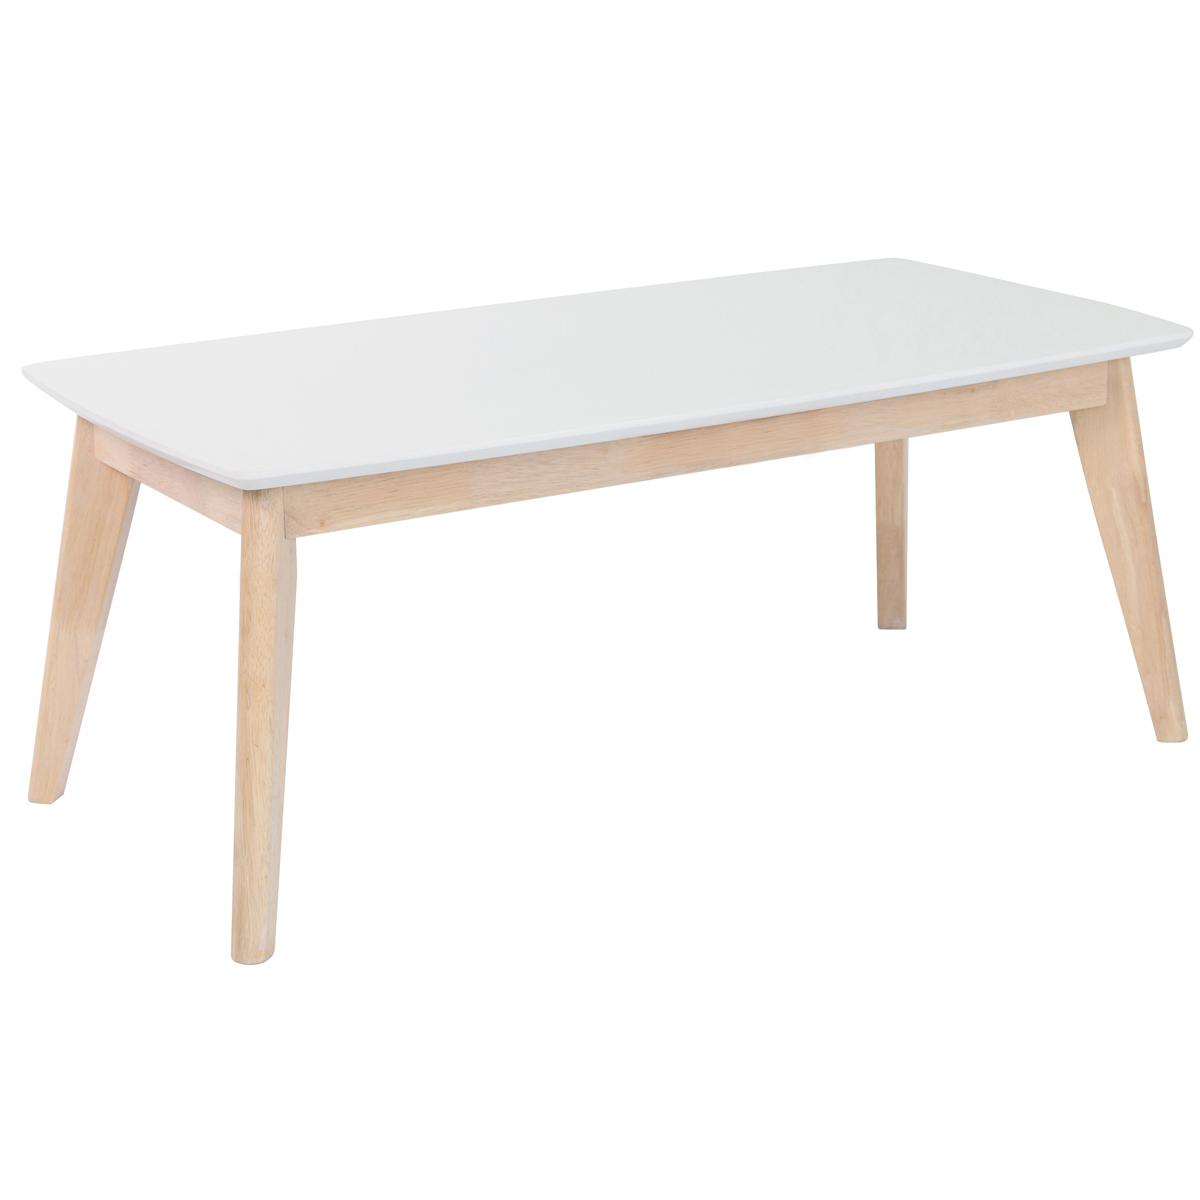 Table basse rectangulaire scandinave blanc et bois clair massif L105 cm LEENA vue1